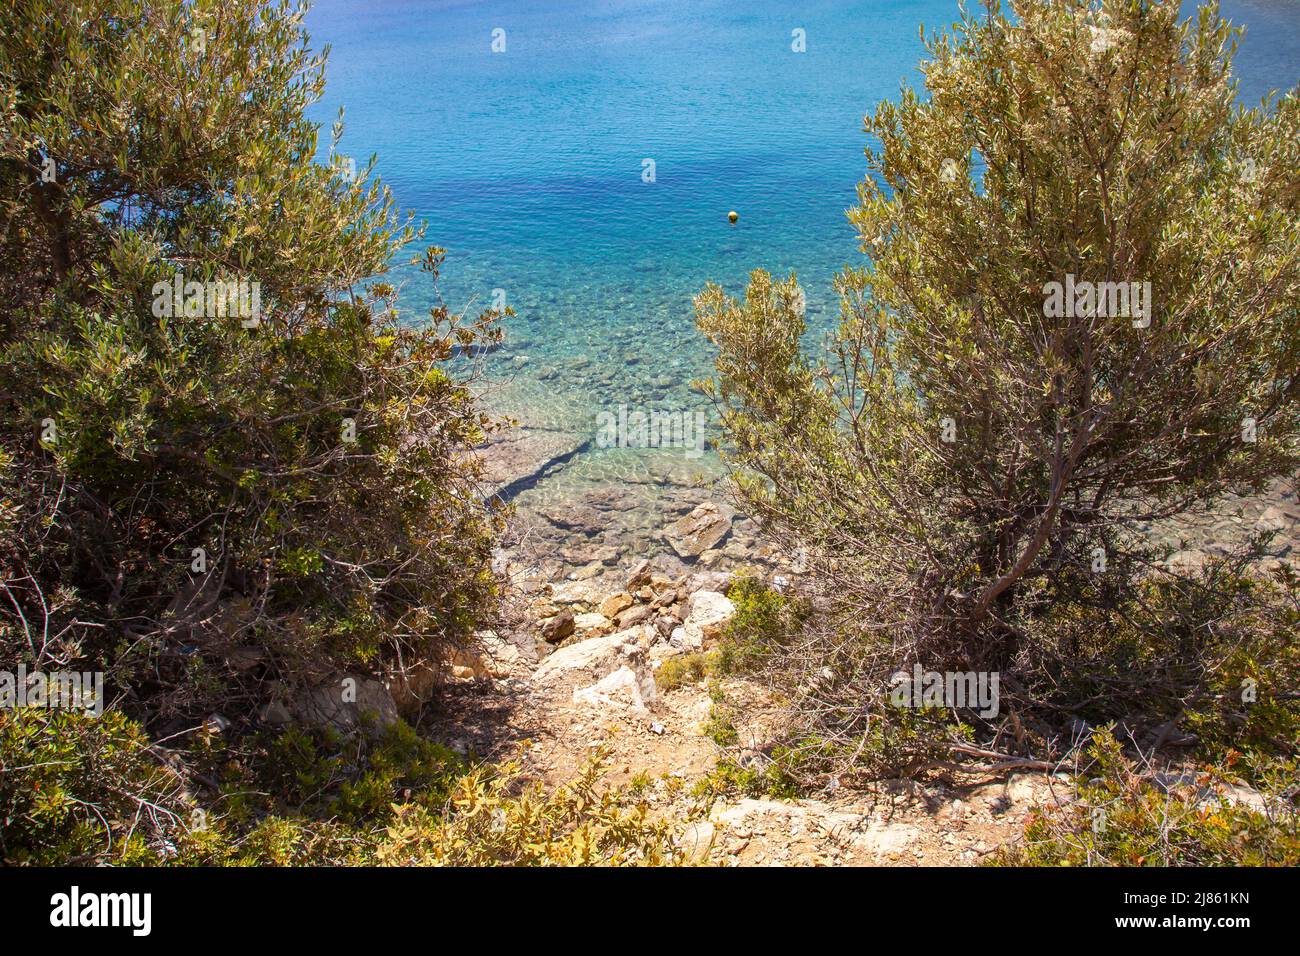 Unberührte Küste im Mittelmeer. Die Landschaft von Meer und Sträuchern. Reisekonzept. Stockfoto